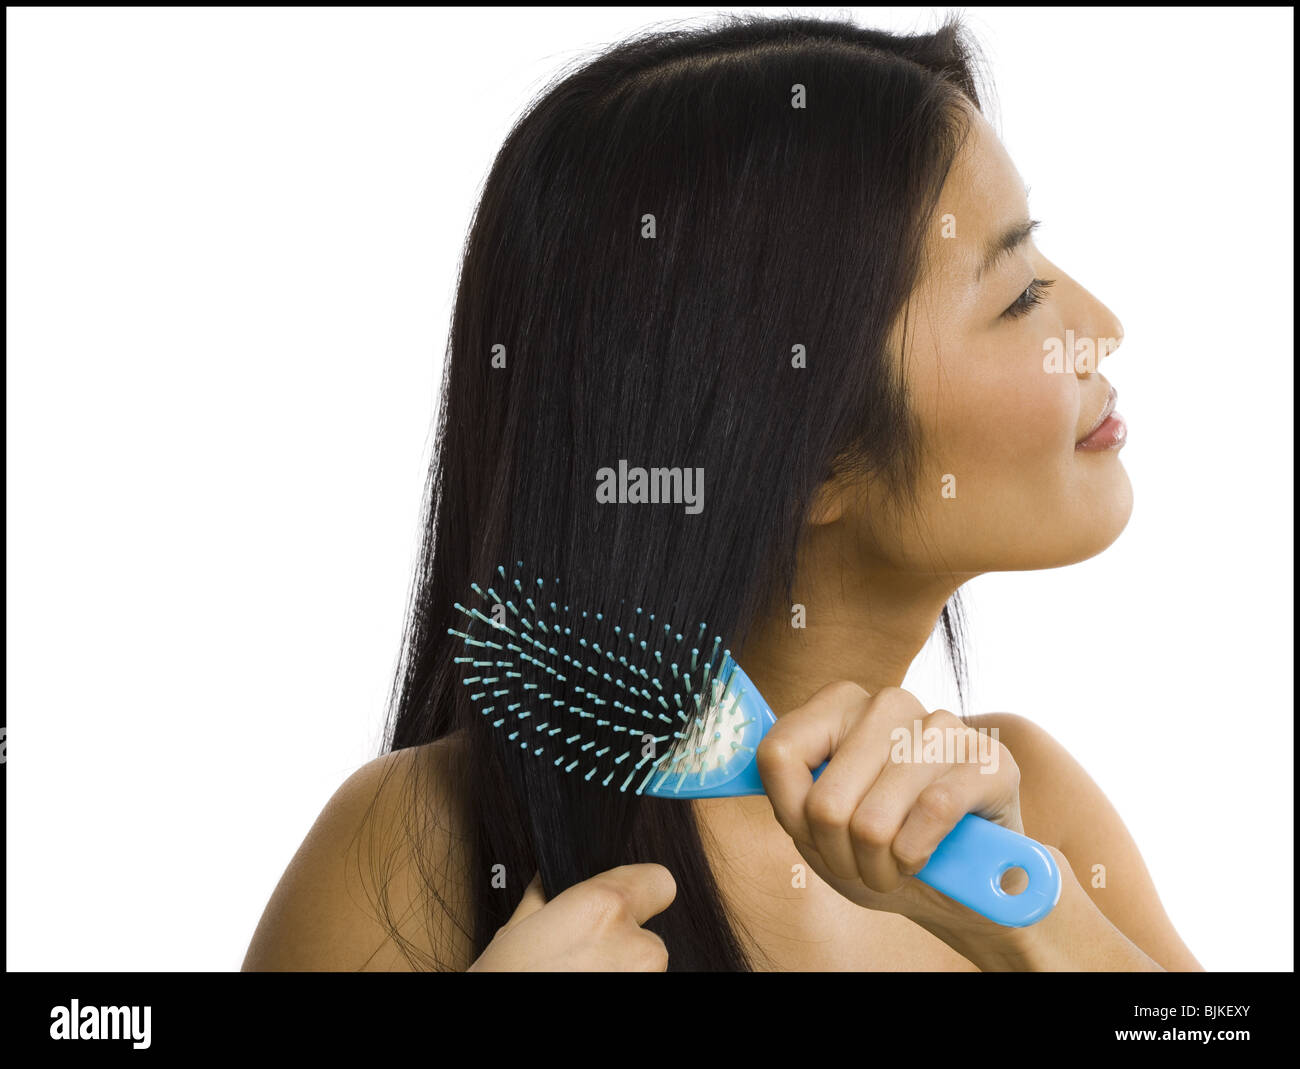 Smiling woman brushing hair Stock Photo